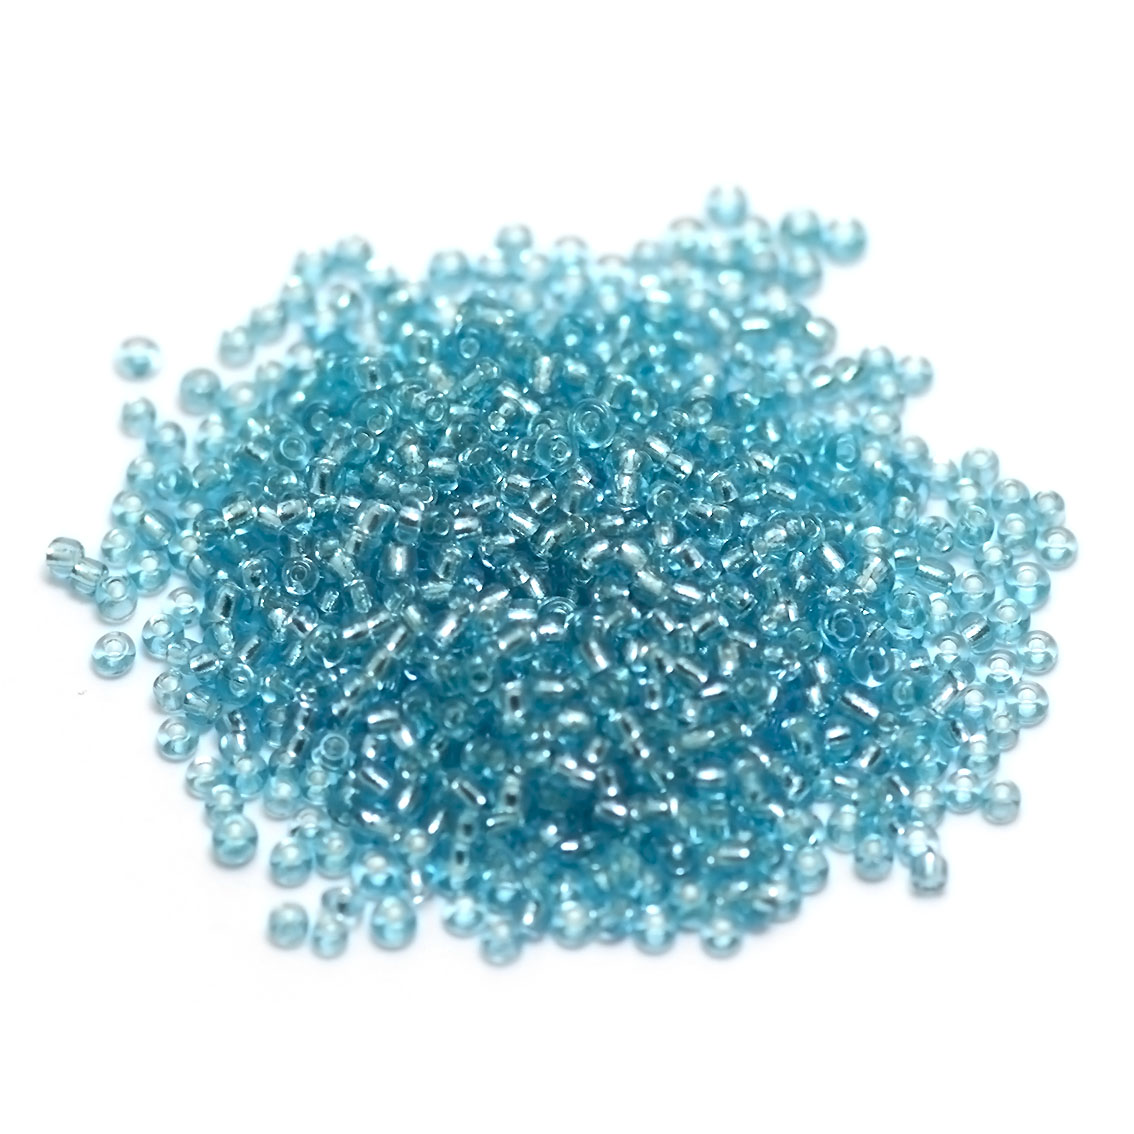 20g perles de rocailles 2mm en verre,bleu ciel translucide